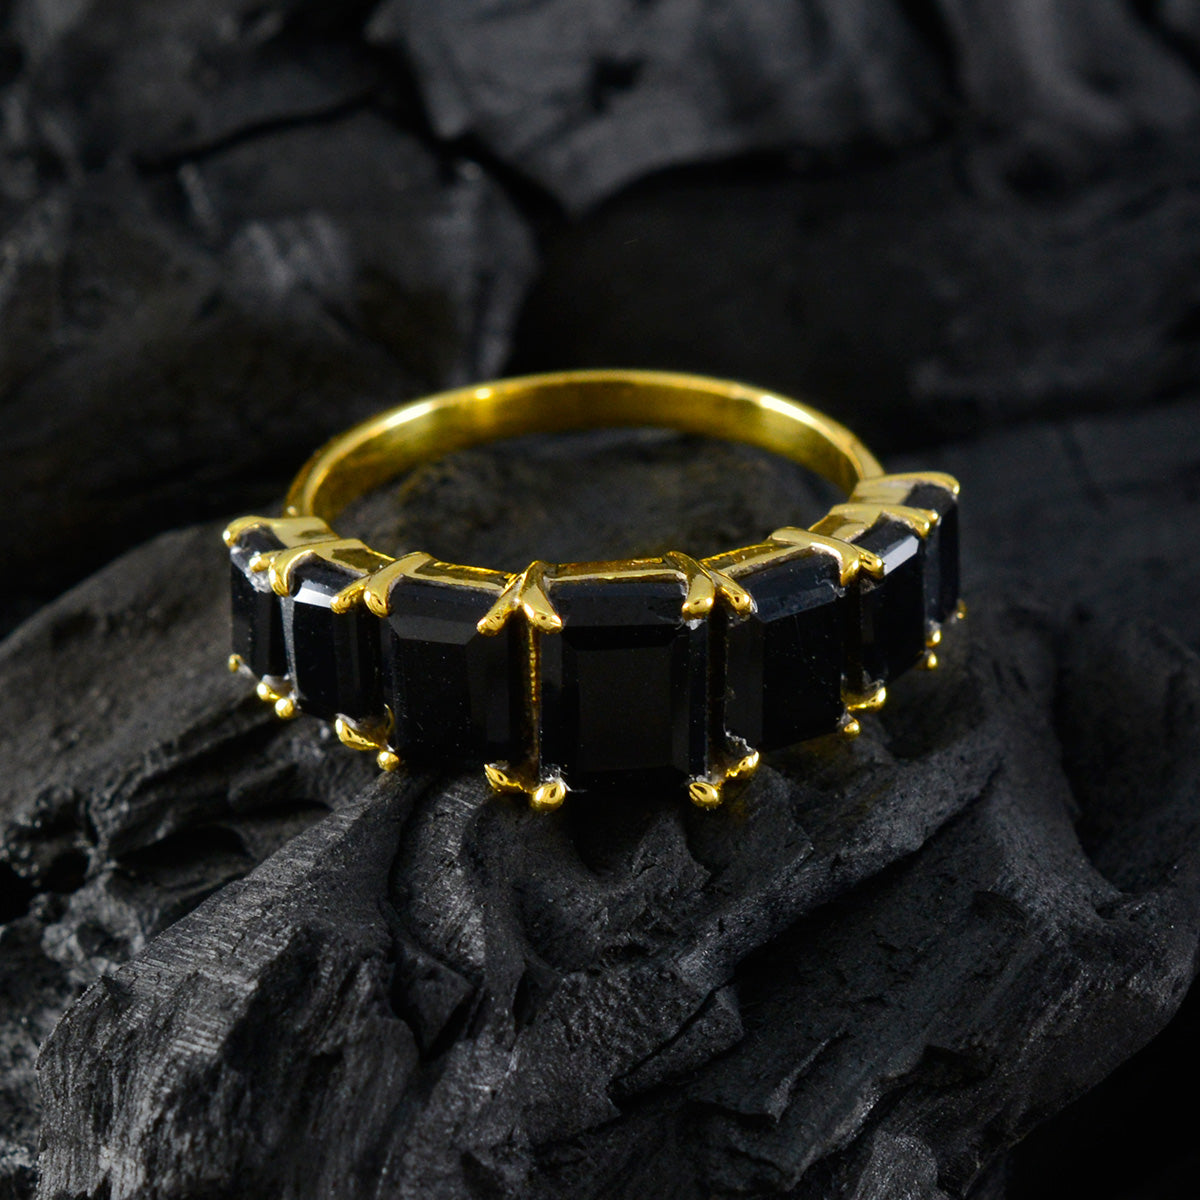 Riyo Exporteur Silberring mit Gelbgoldbeschichtung, schwarzer Onyx-Stein, achteckige Krappenfassung, Modeschmuck, Black-Friday-Ring